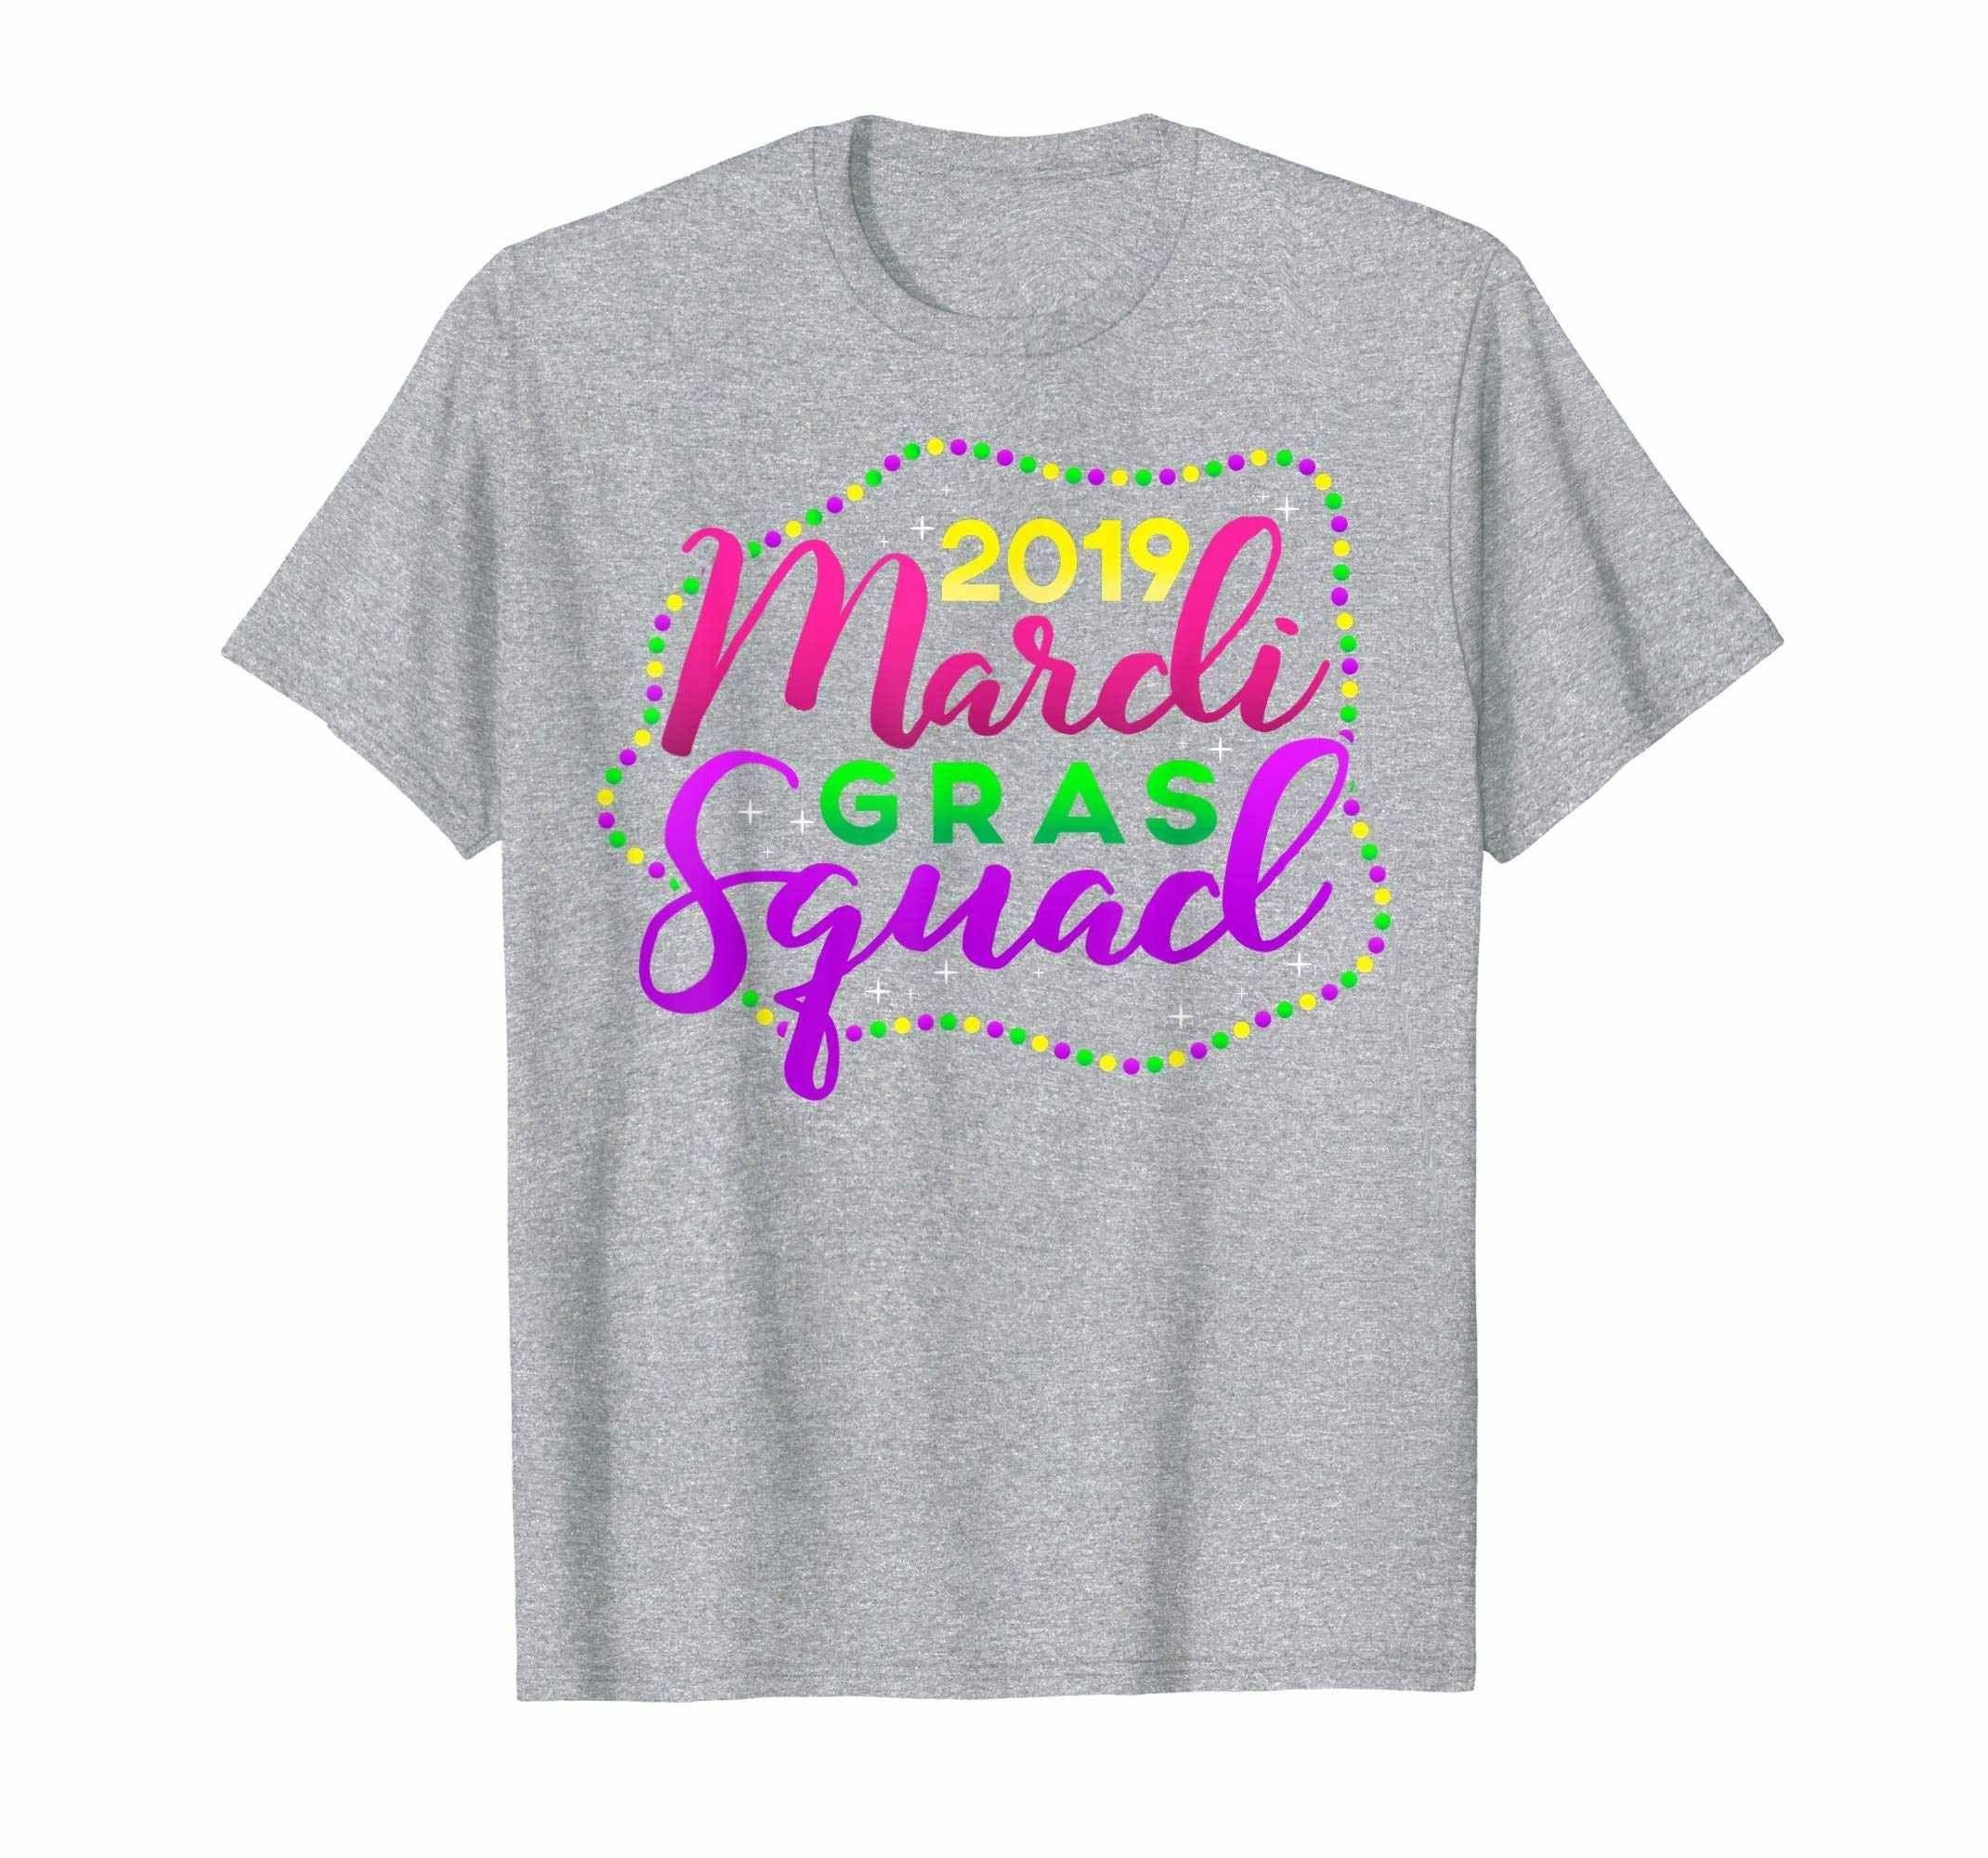 2019 Mardi Gras Squad, Mom Dad & Kids Family T-shirt